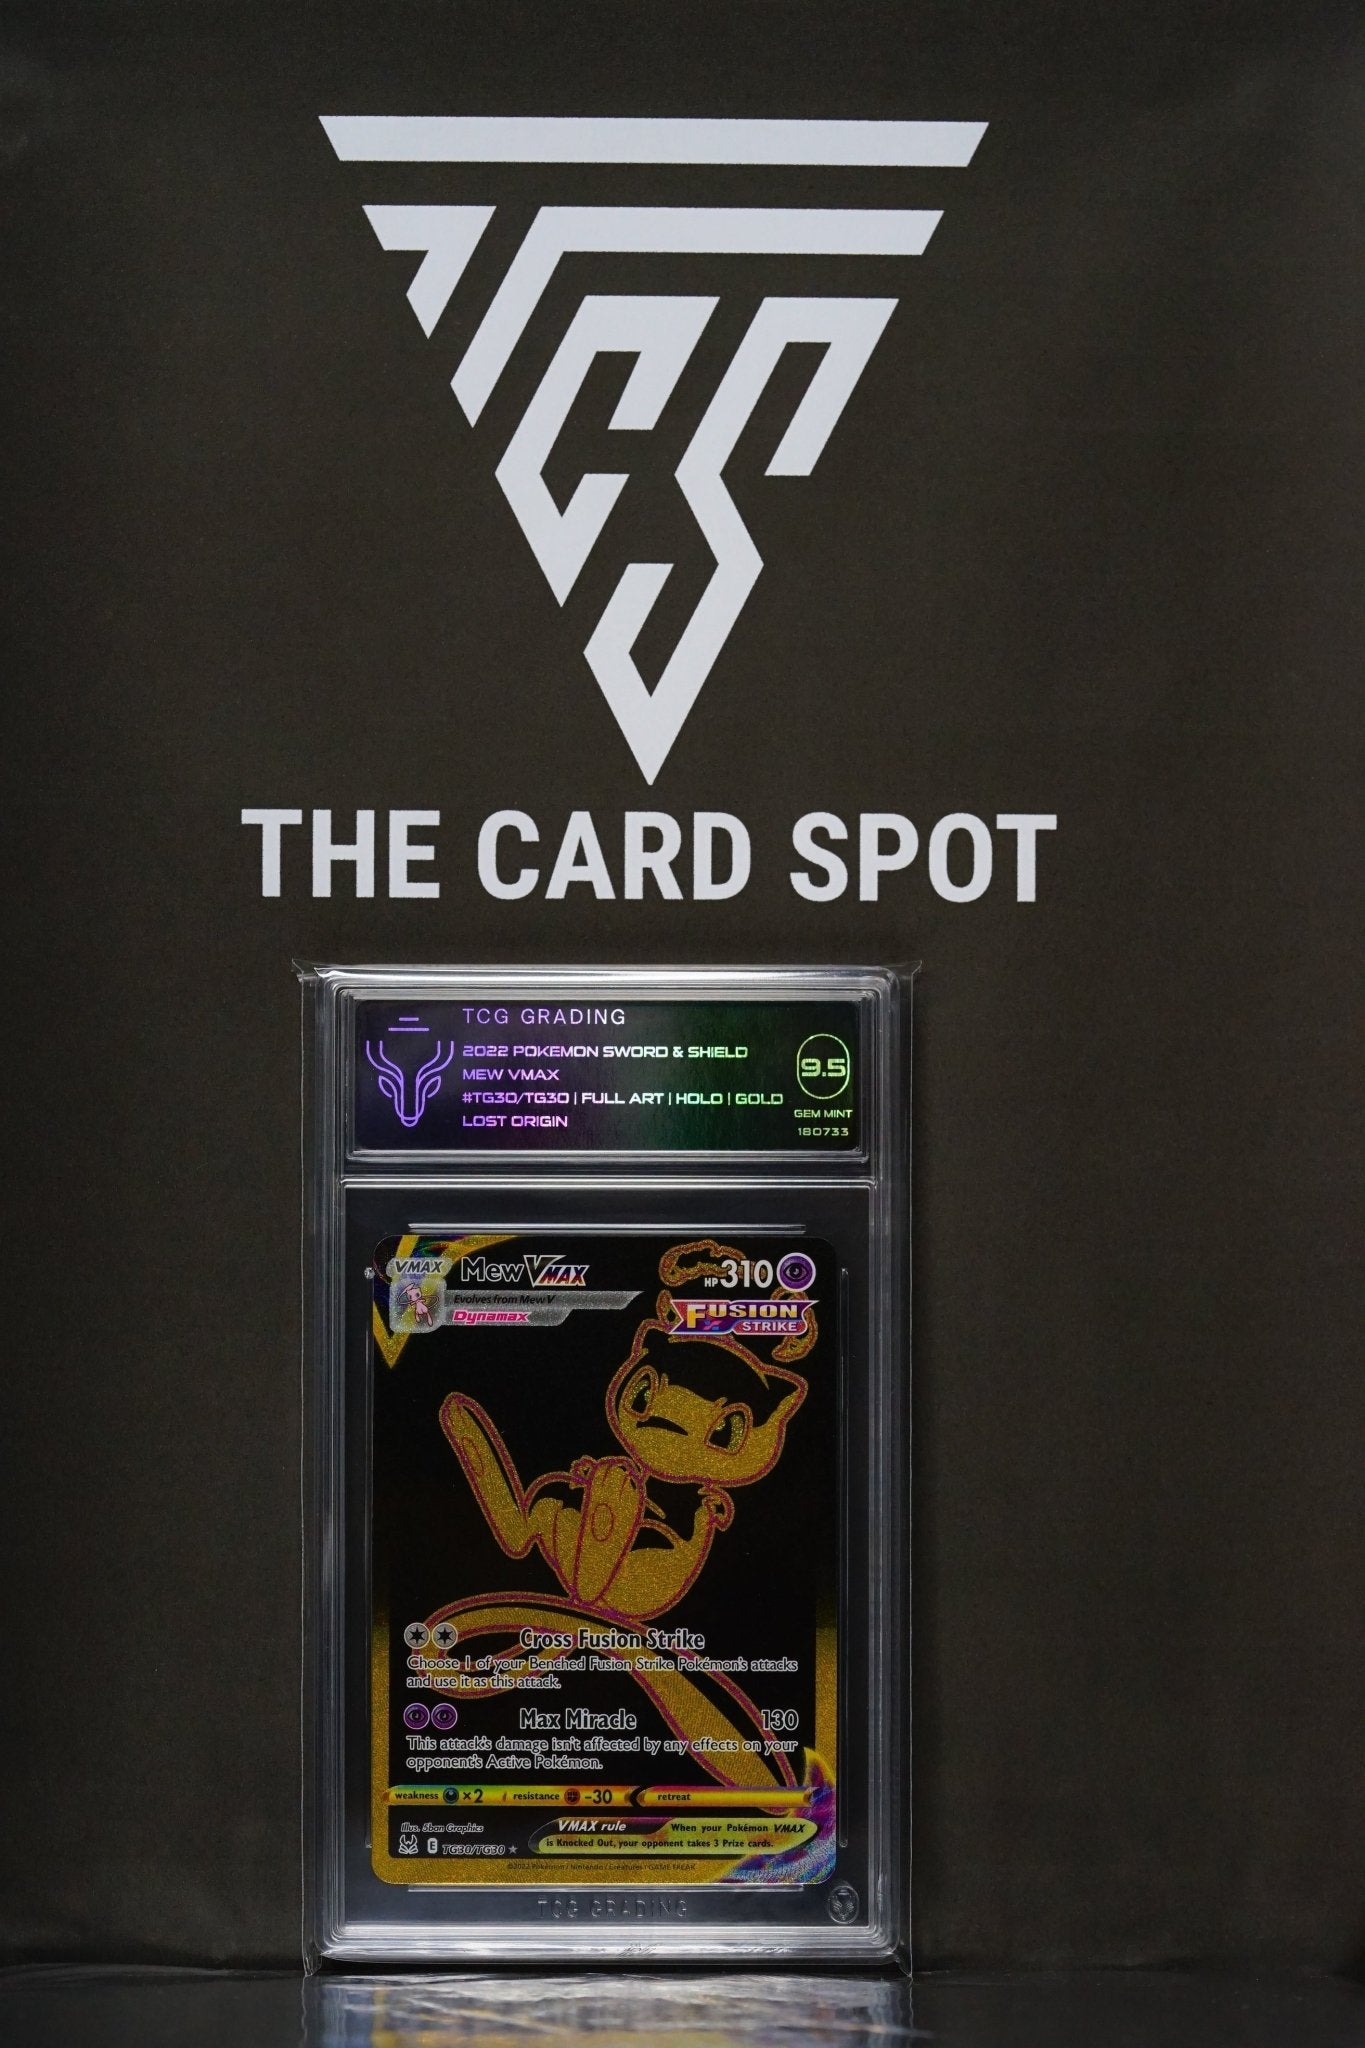 Mew-VMAX (TG30/TG30), Busca de Cards